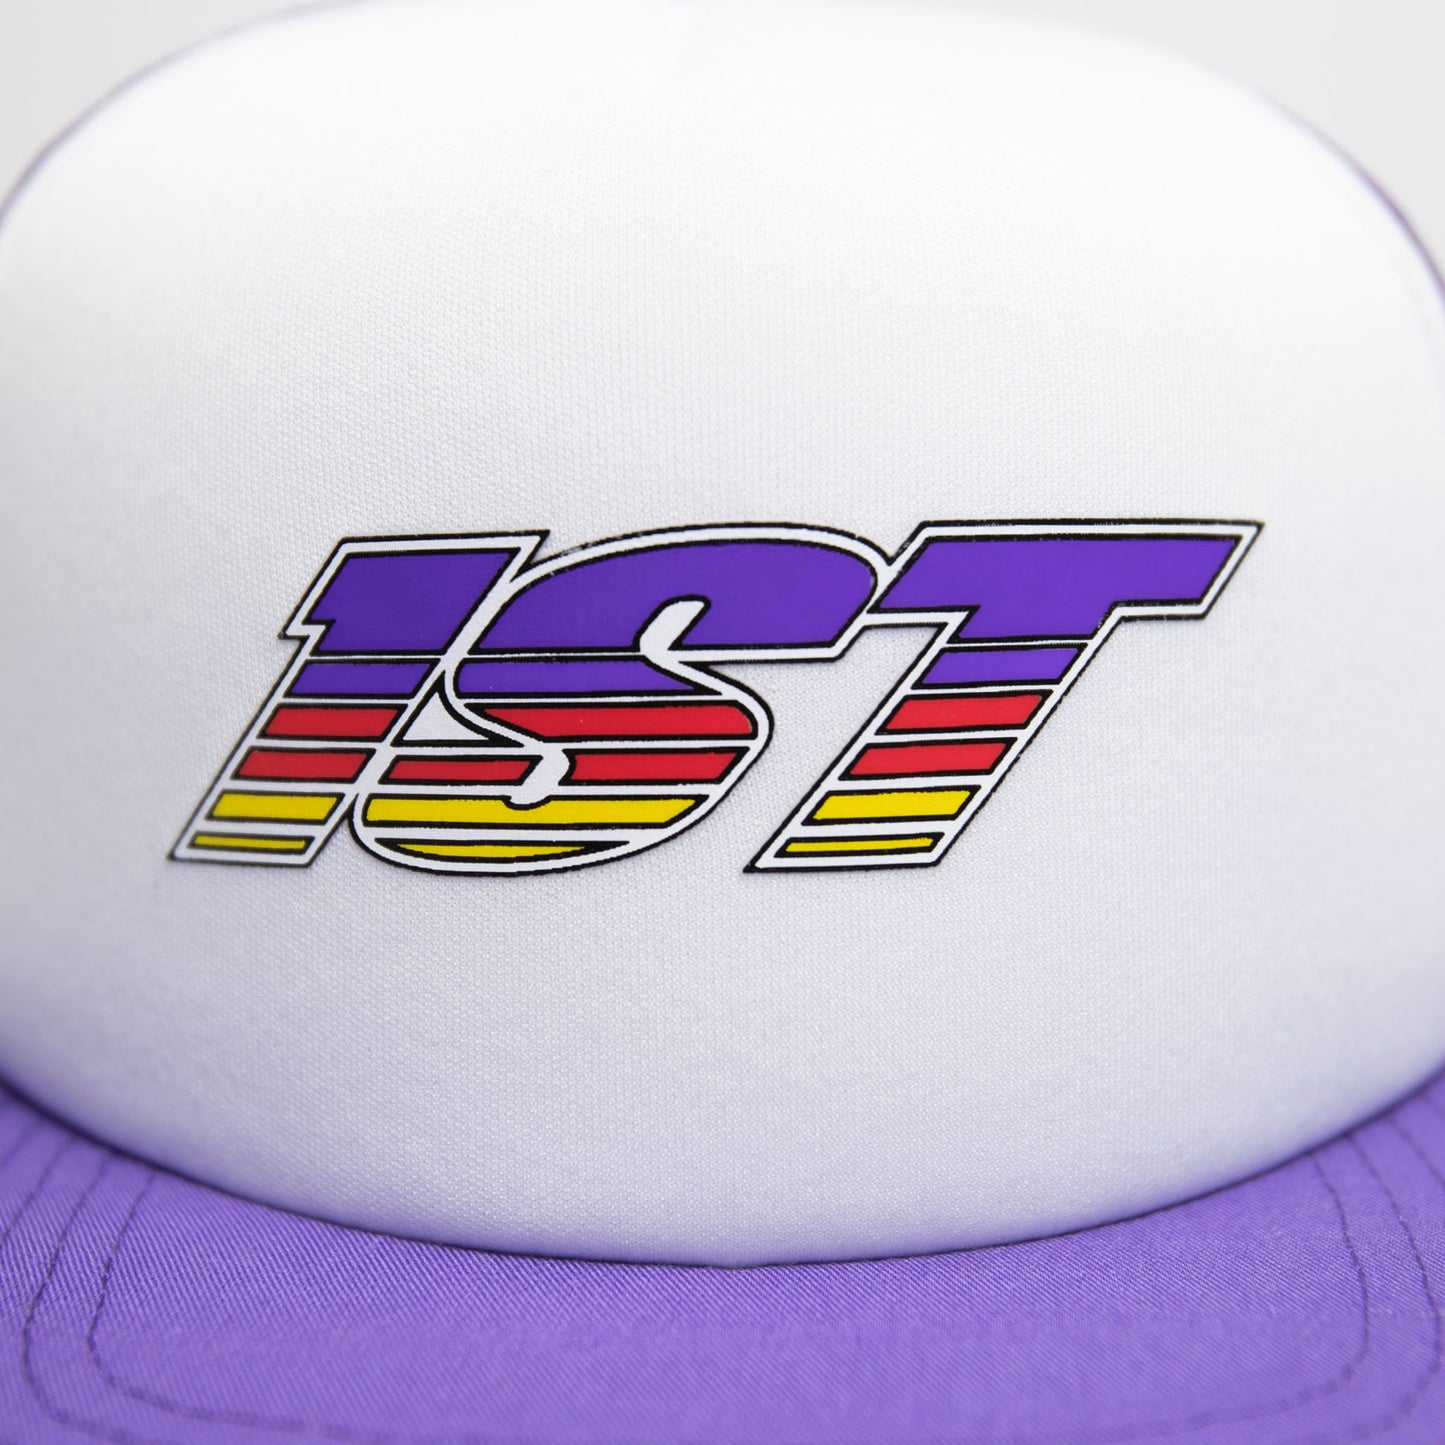 1ST "Racing" Trucker Hat